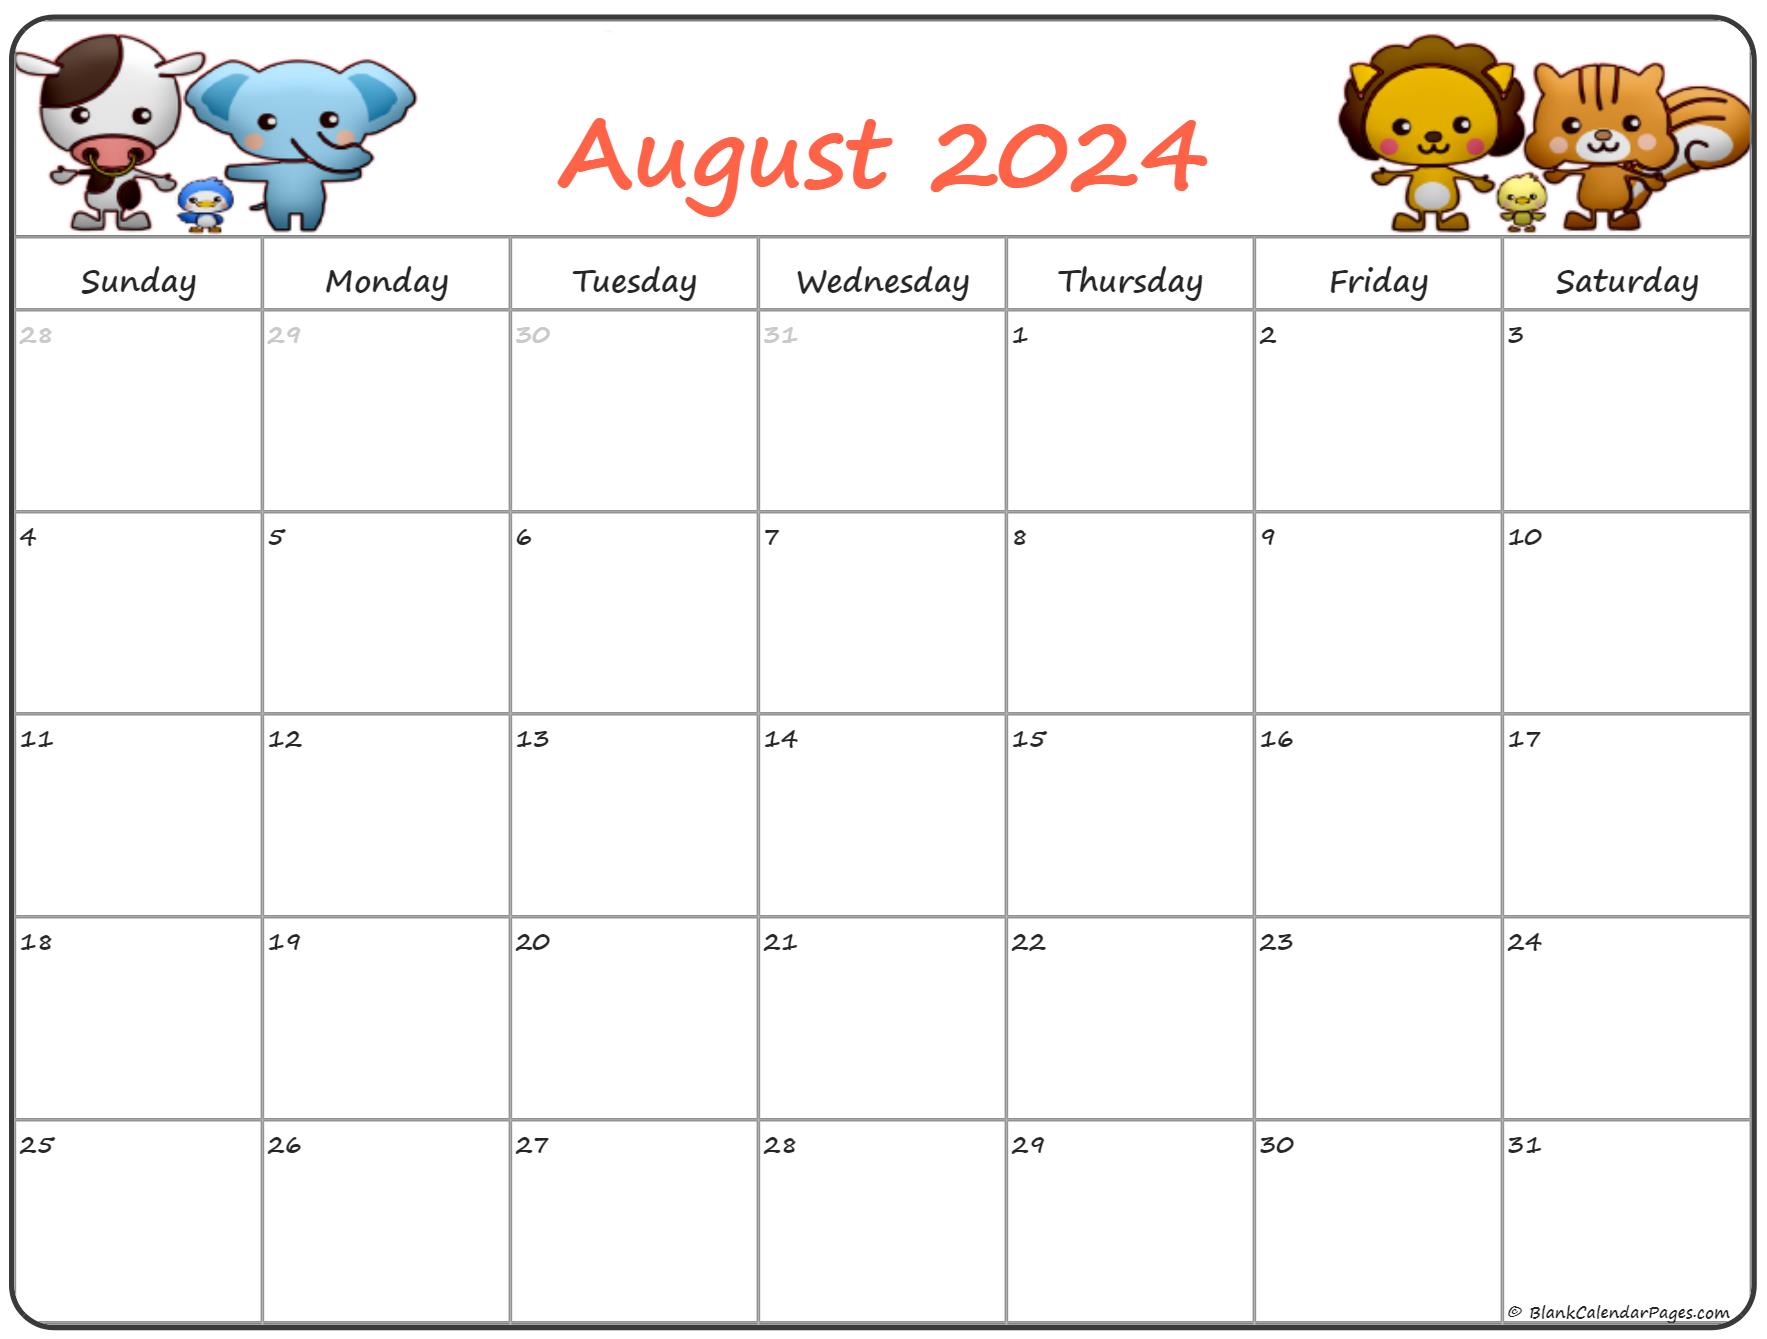 August 2020 Pregnancy Calendar | Fertility Calendar